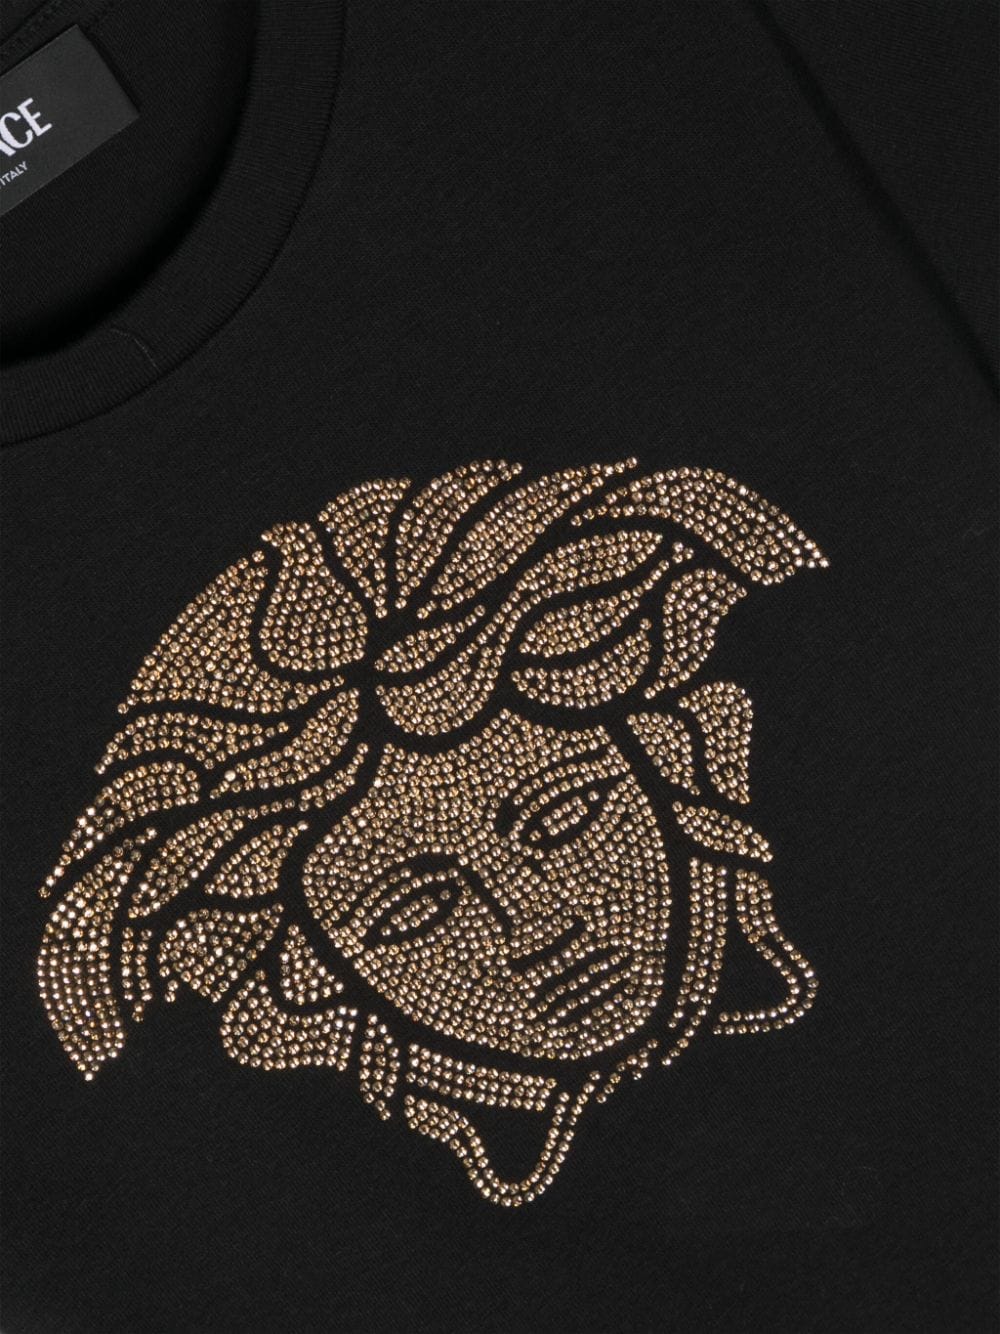 Versace Kids t-shirt con Medusa